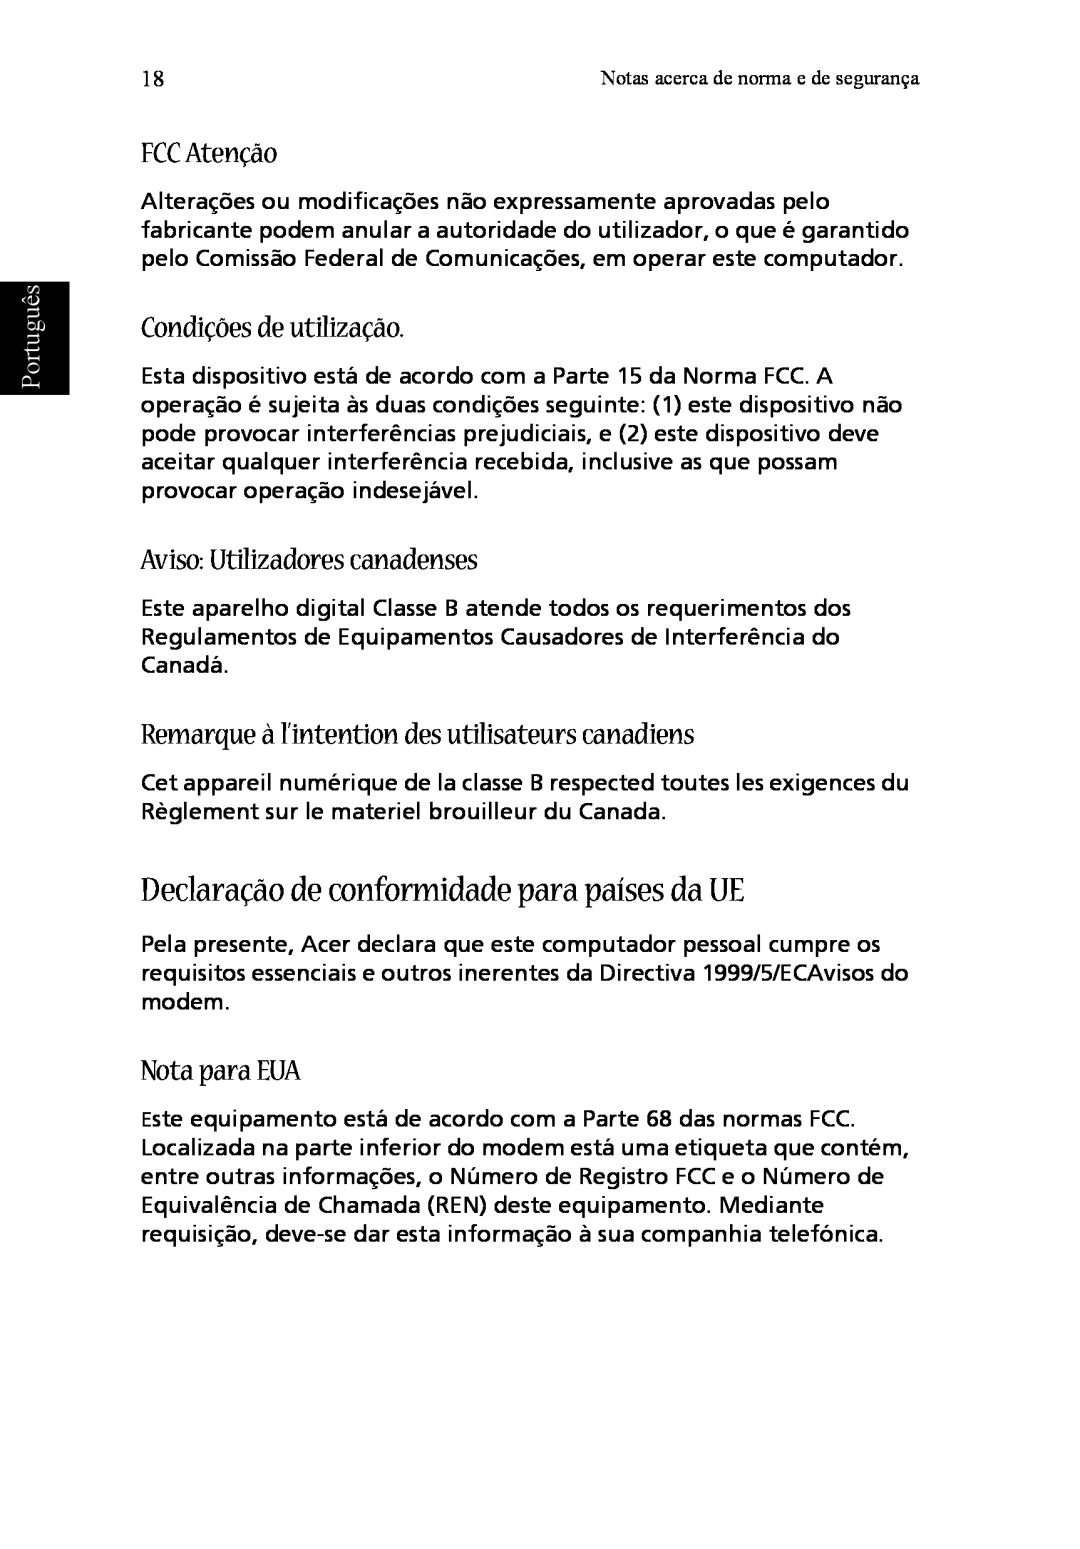 Acer T600 Declaração de conformidade para países da UE, FCC Atenção, Condições de utilização, Nota para EUA, Português 